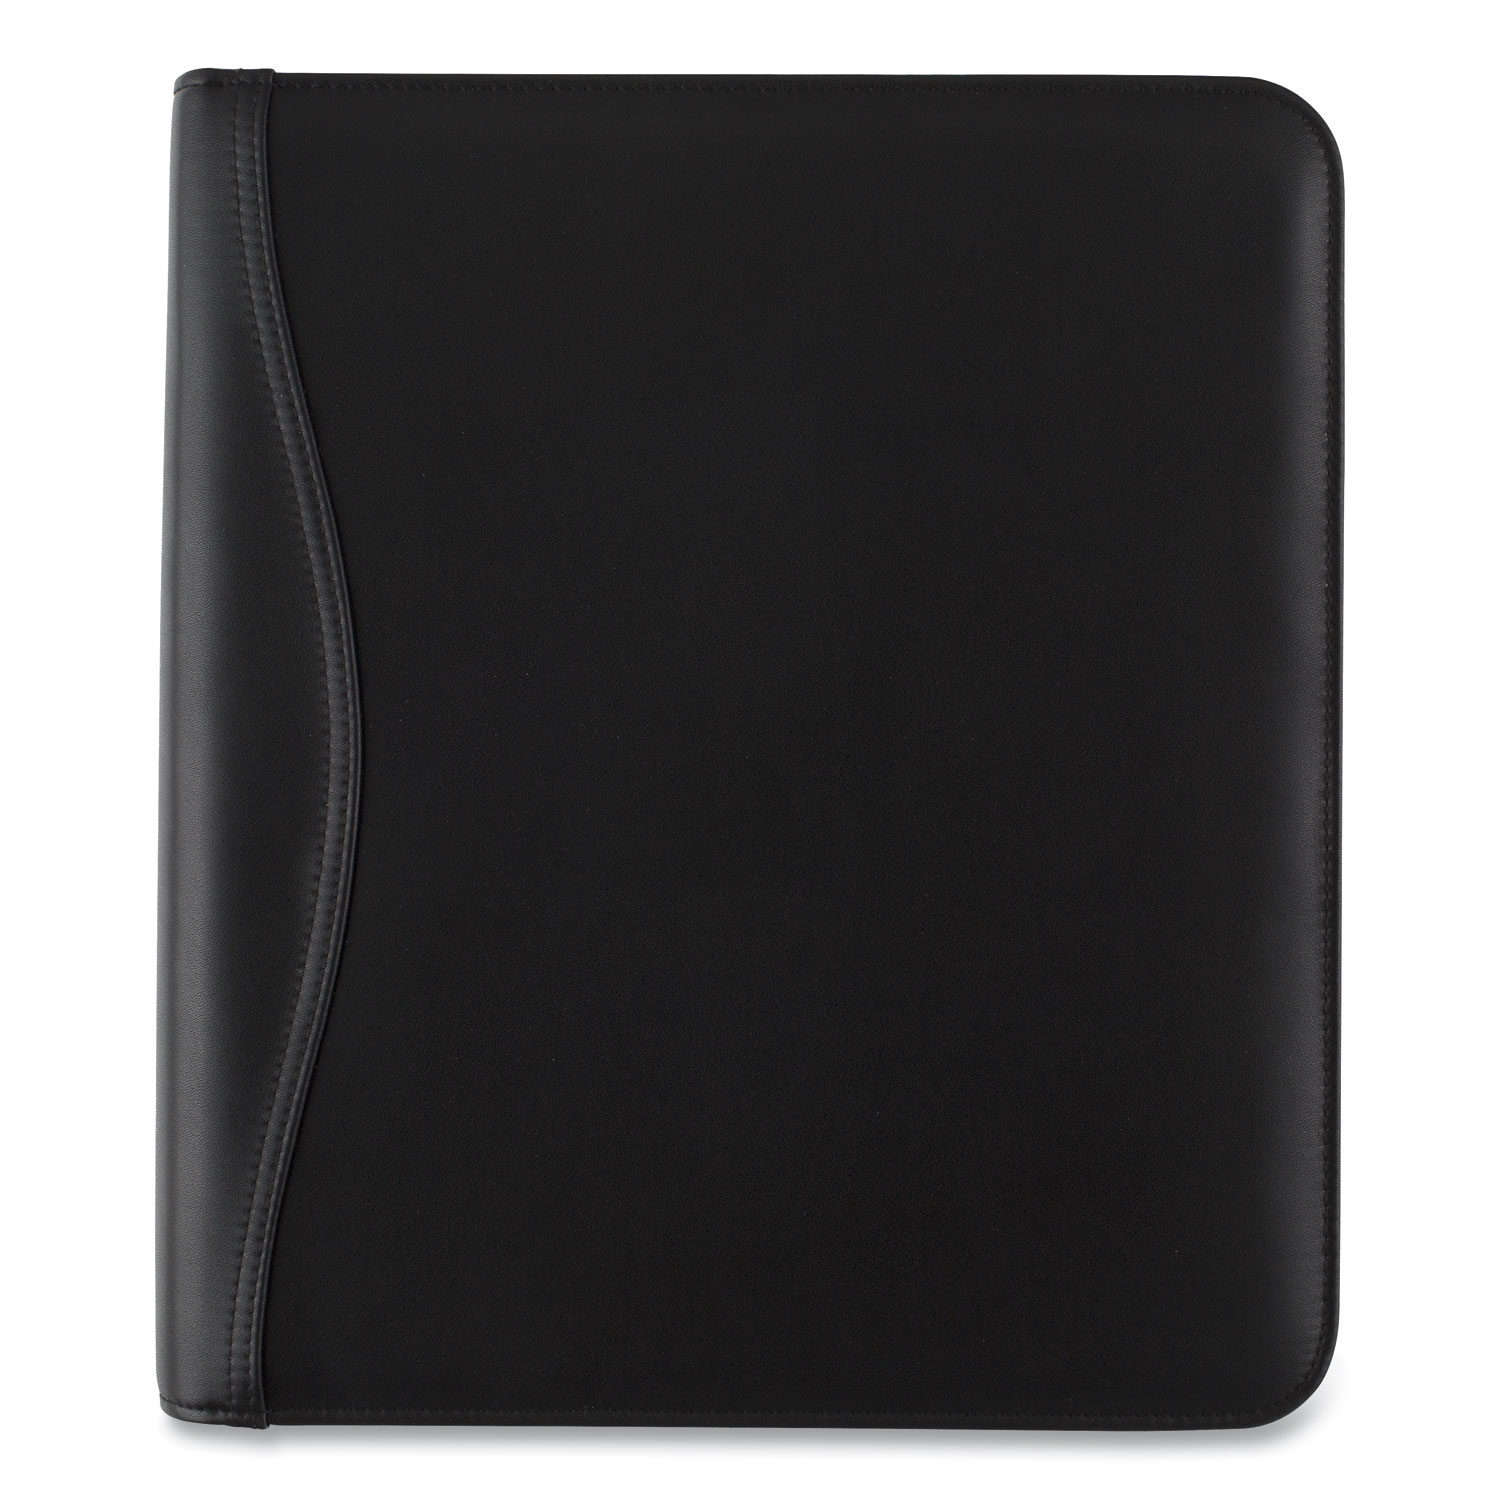  AT-A-GLANCE 038054005 Black Leather Starter Set, 11 x 8.5, Black (AAG038054005) 